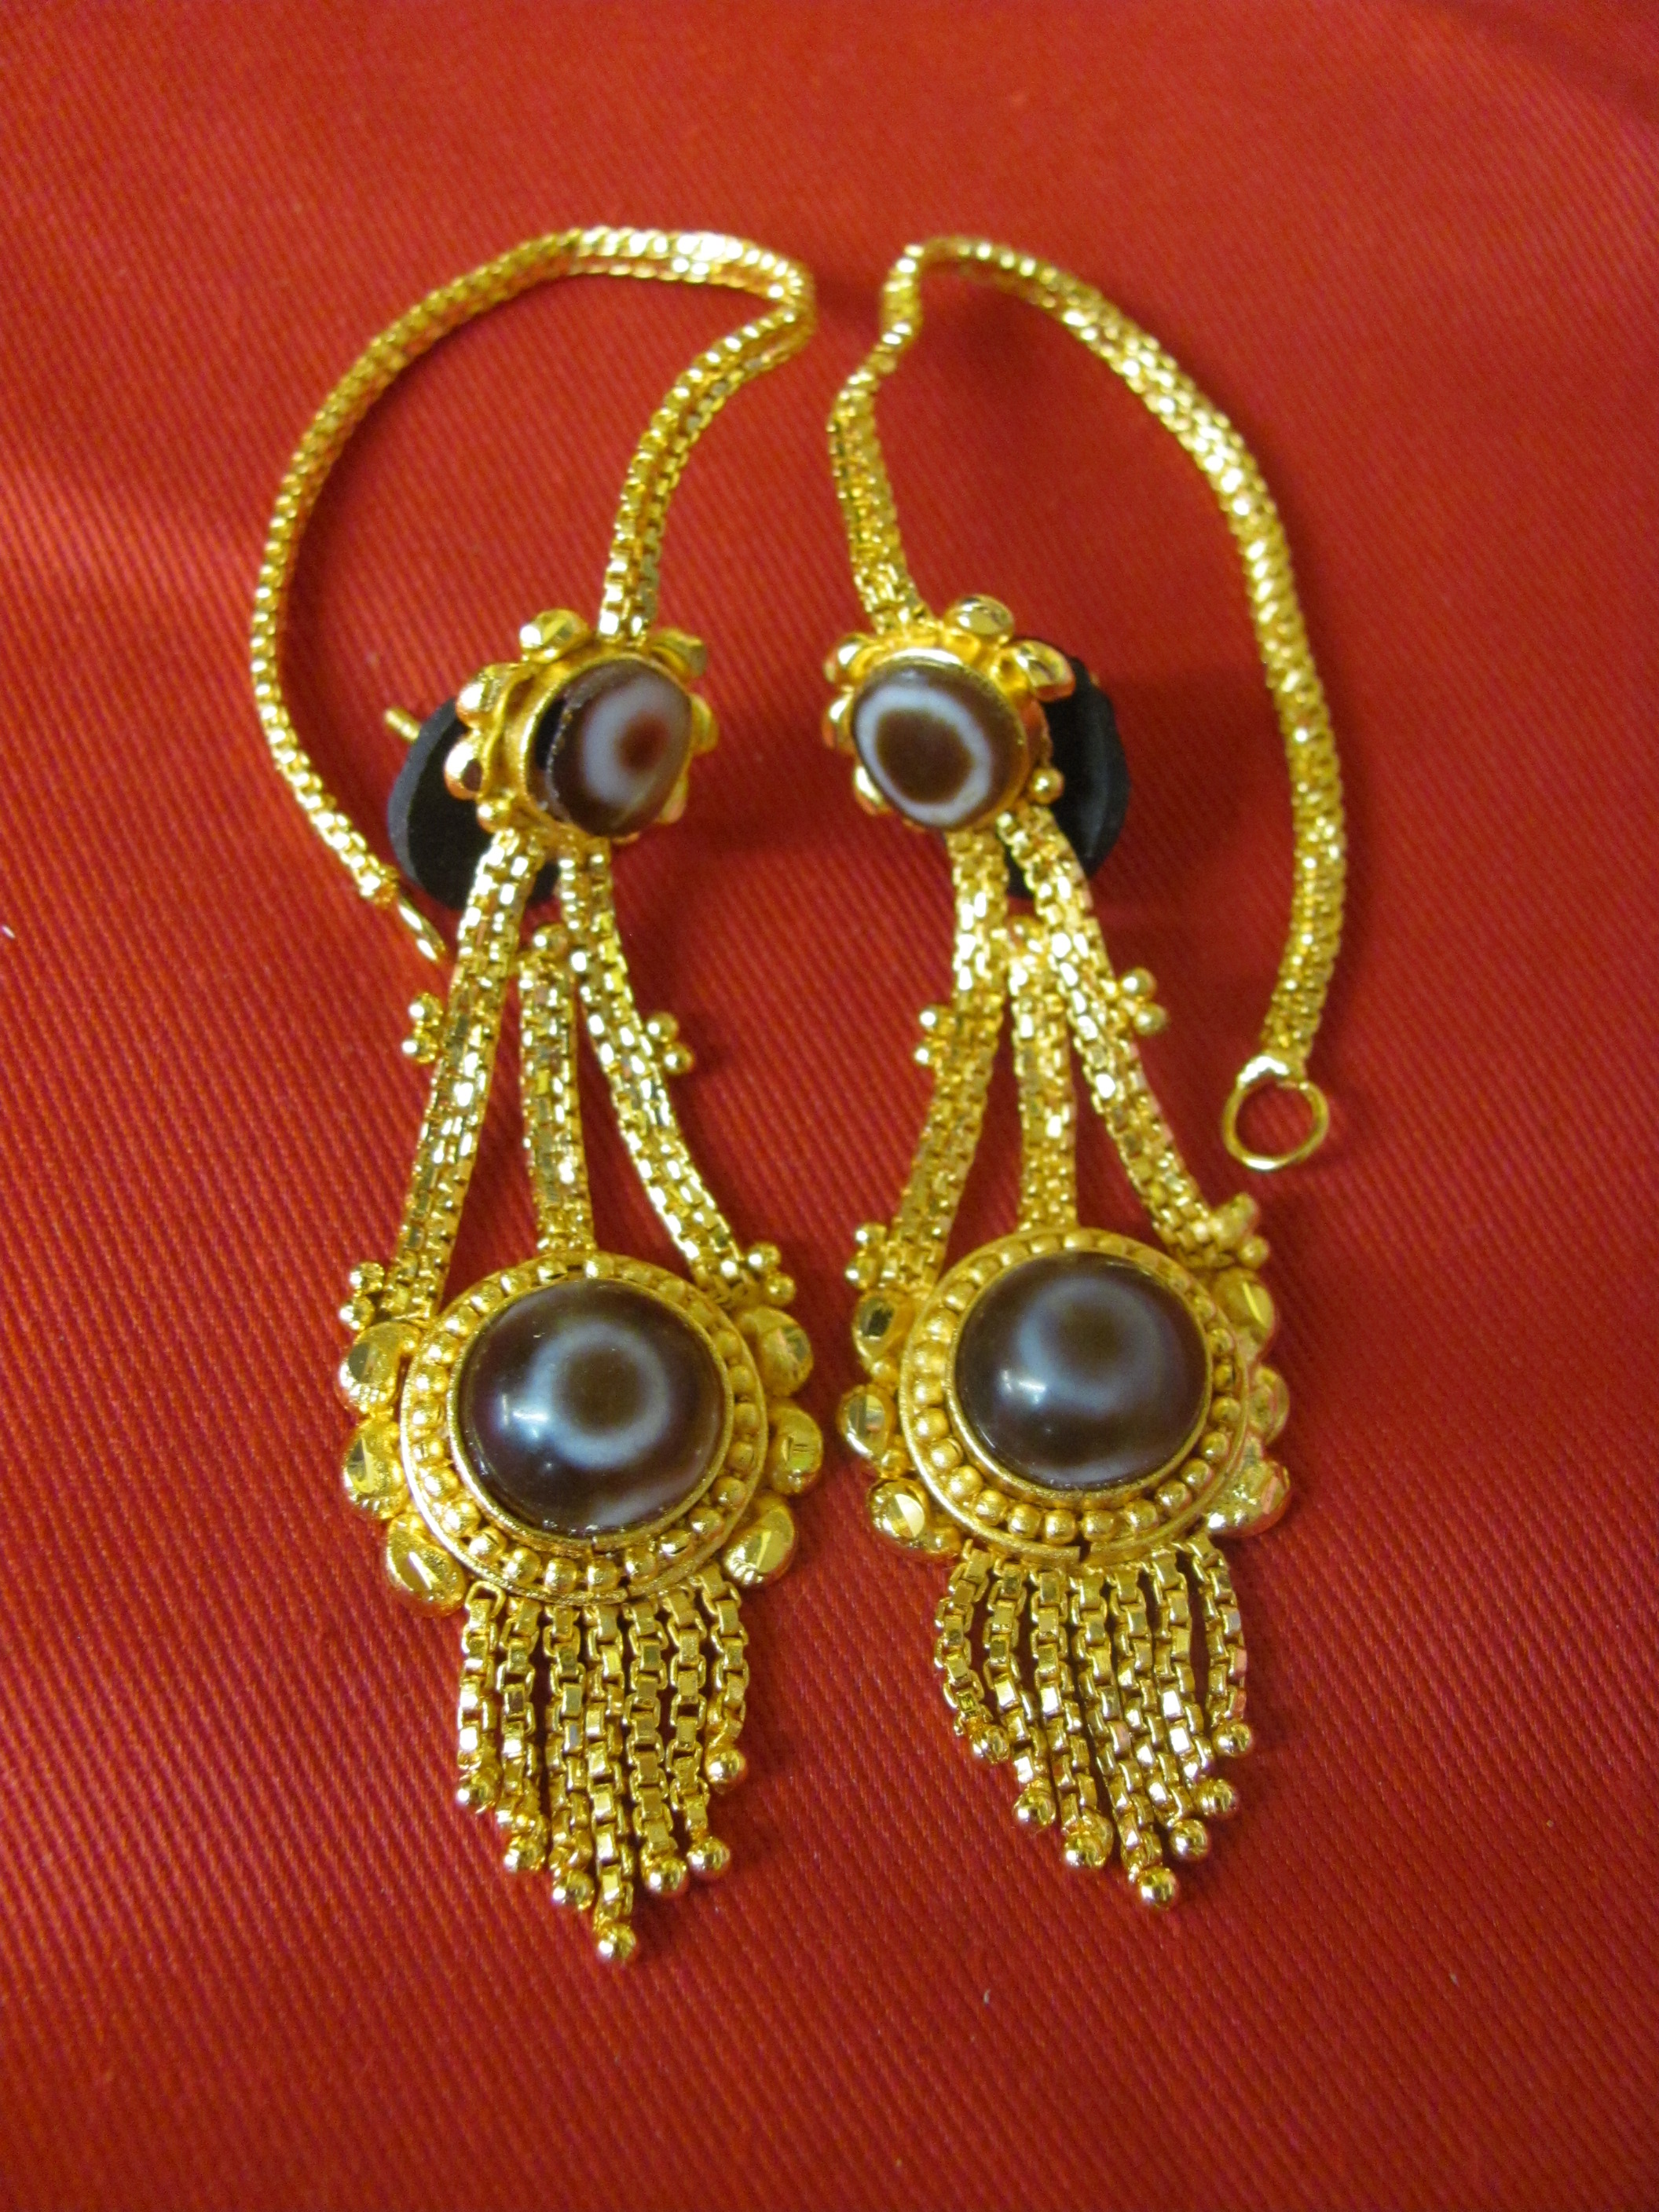 Gold Tibetan Earrings, Dangle Earrings, Bohemian Jewelry, Crystal Earrings,  Non Allergic Earrings, Ethnic Earrings Gift, Teardrop Earrings - Etsy